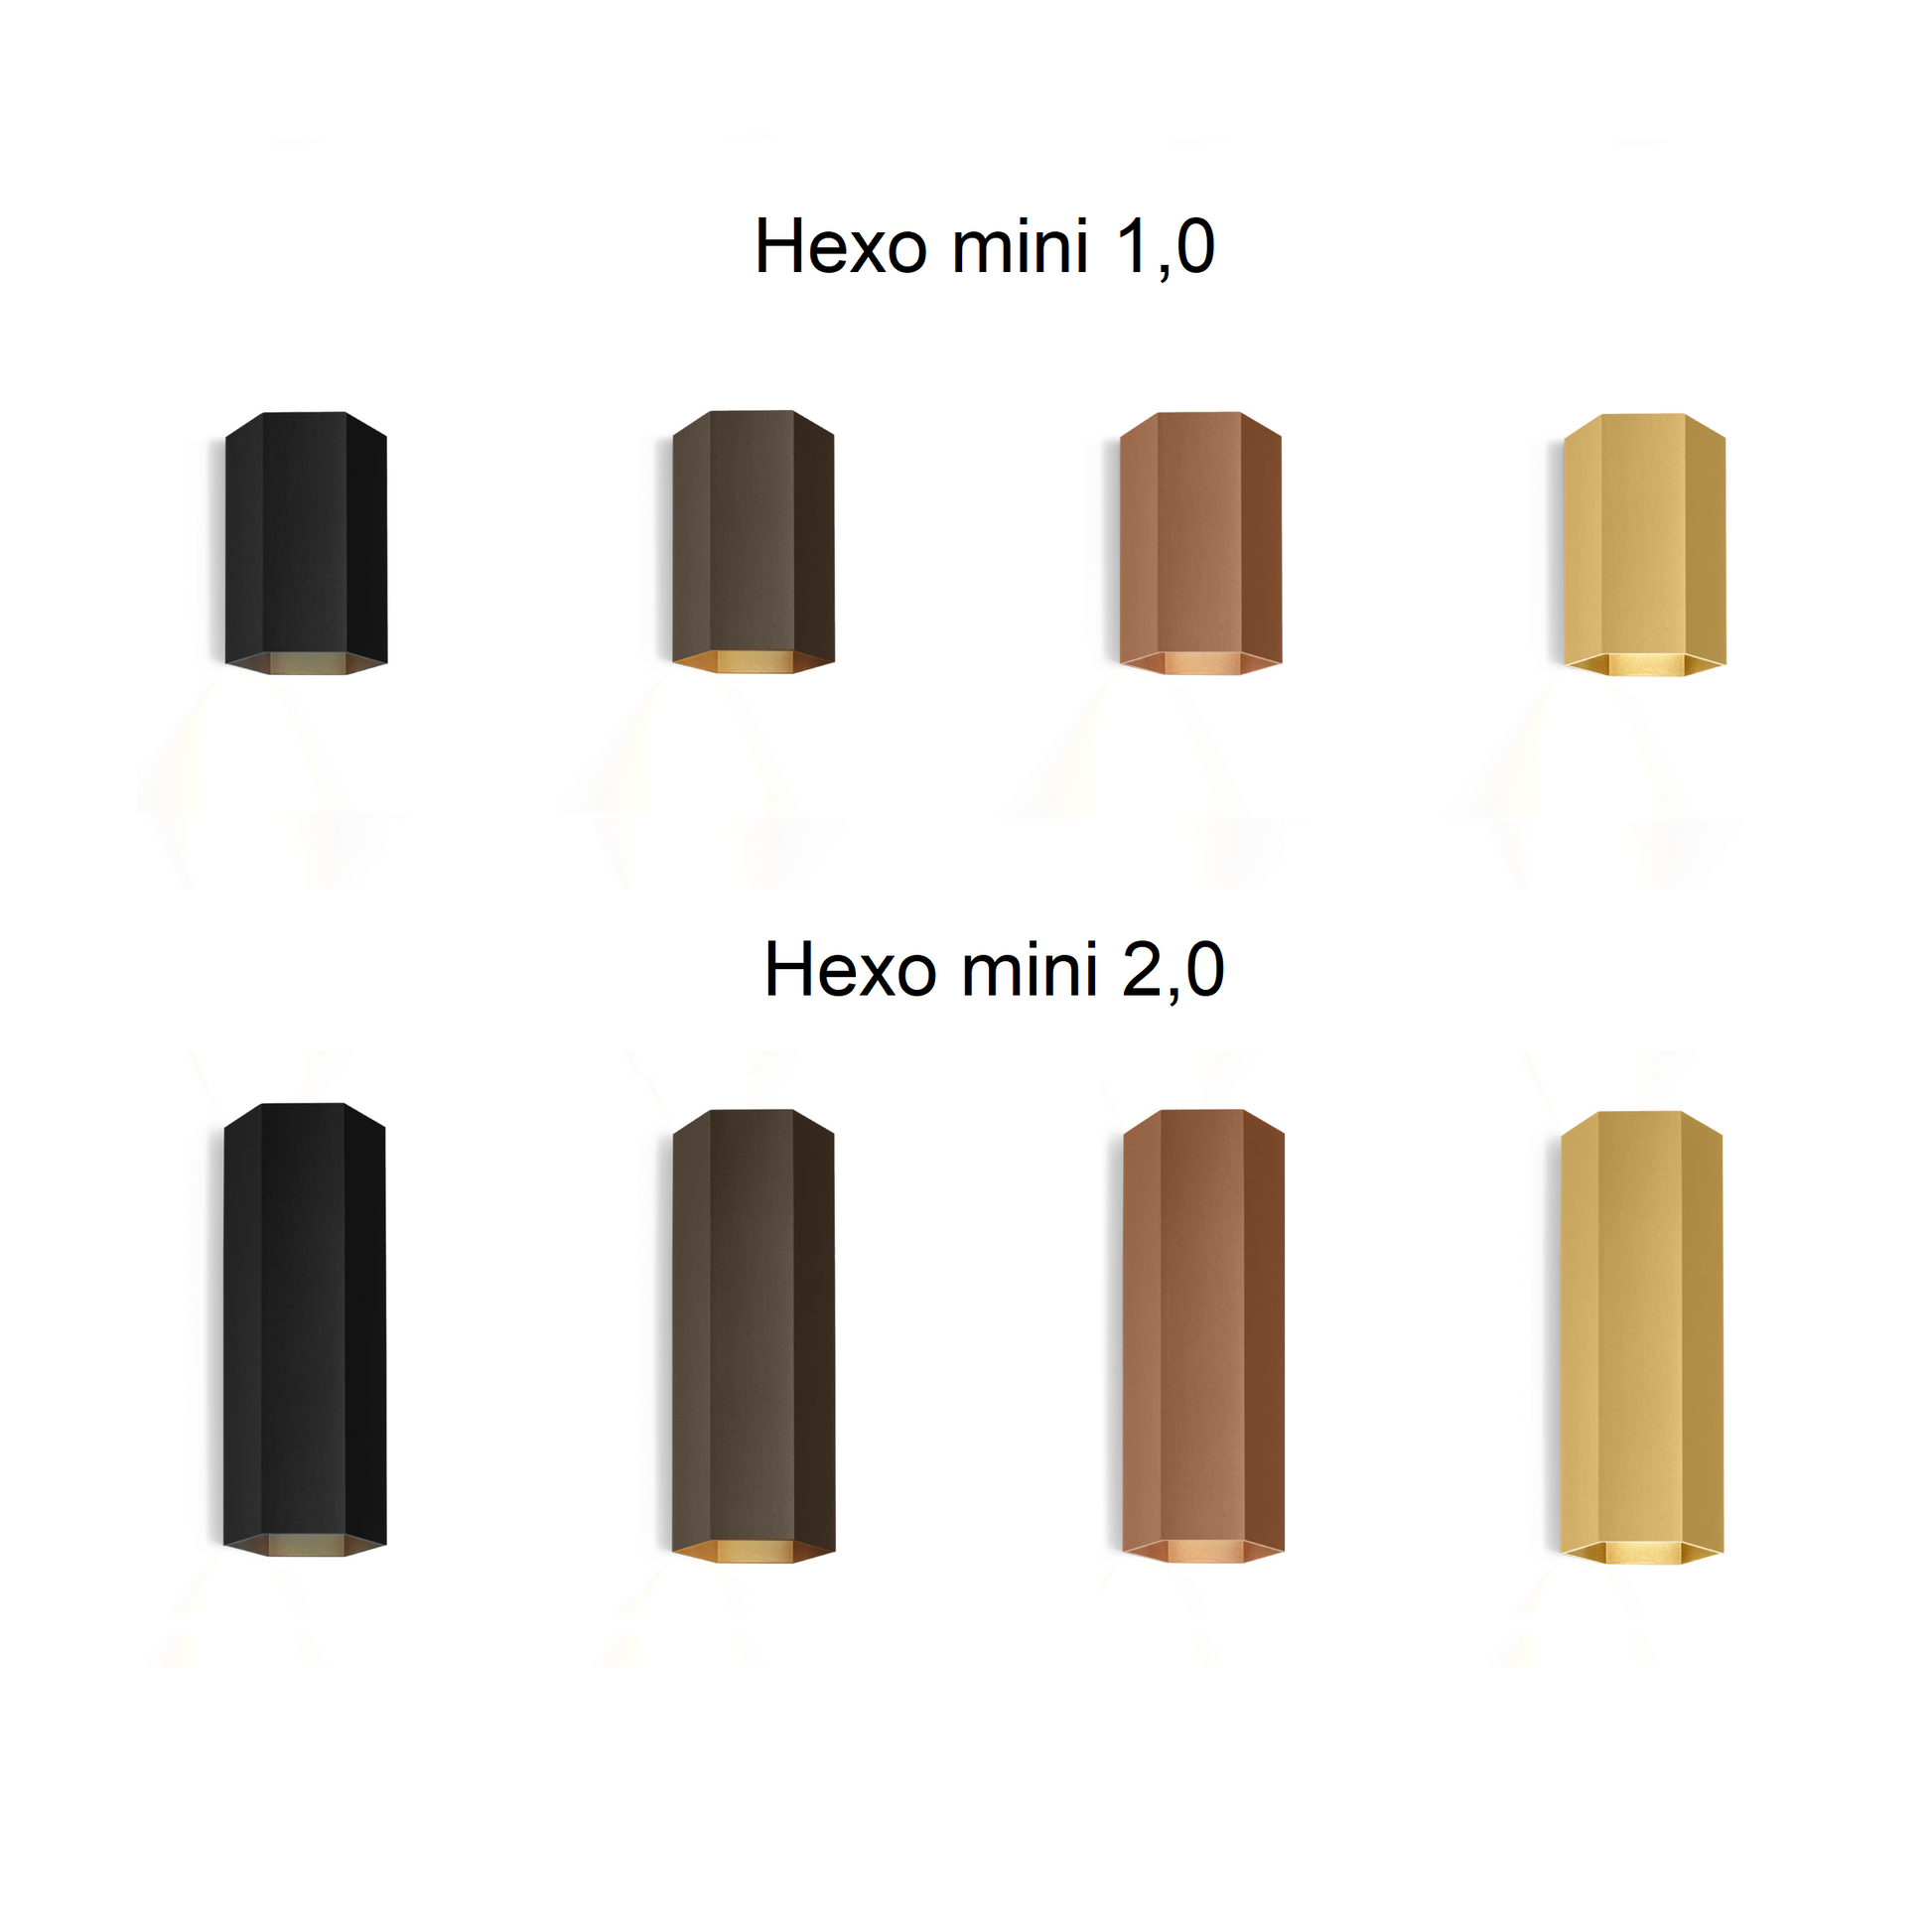 Hexo mini vist i lille og stor model og i alle farver væglampe fra Wever & Ducré